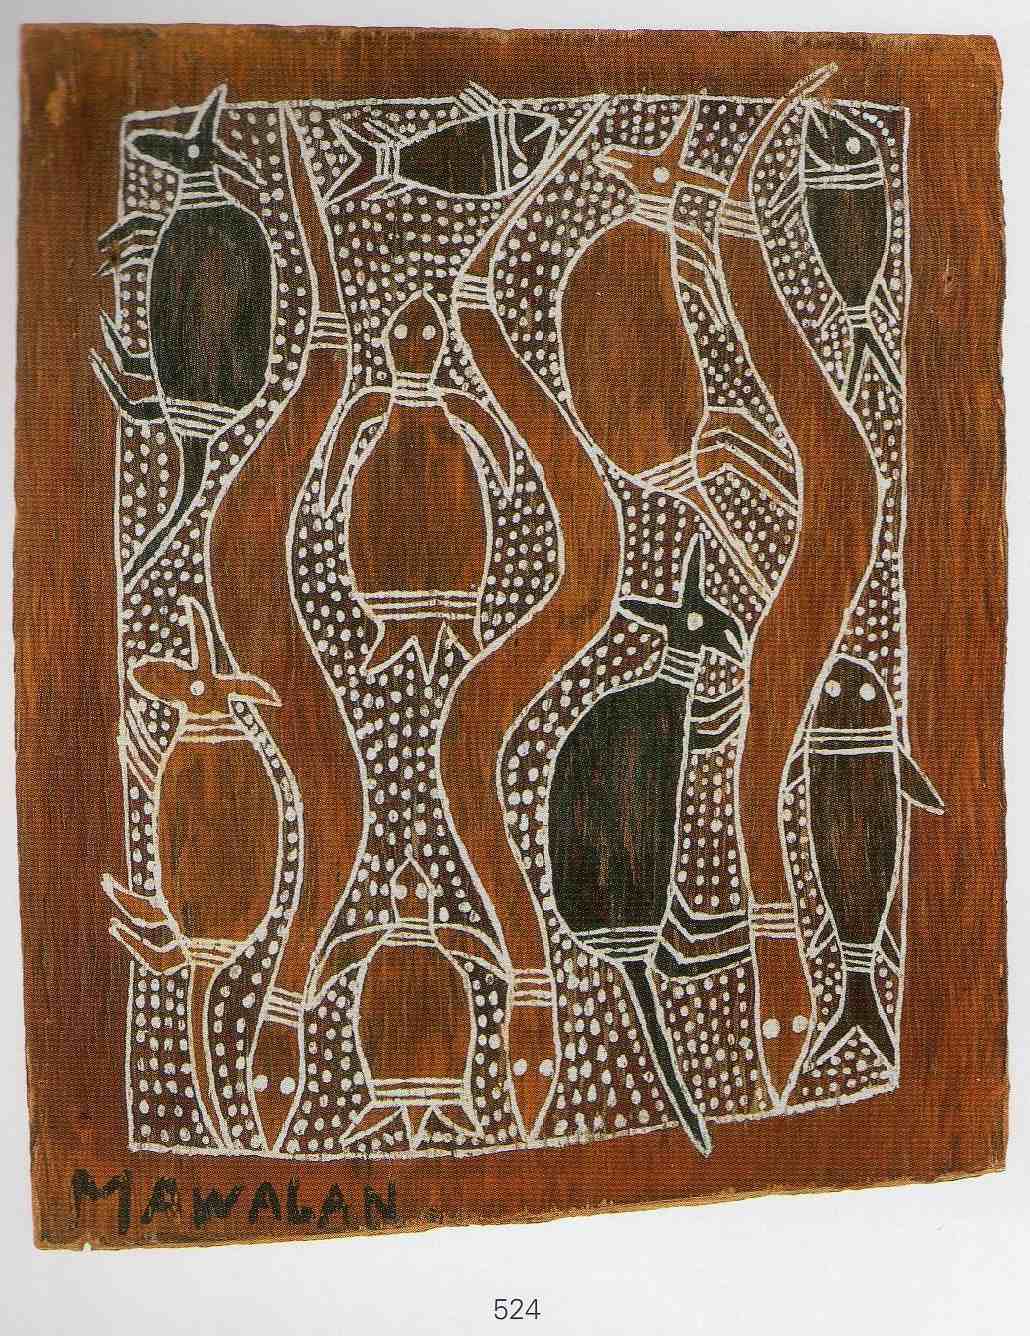 mawalan marika bark painting of snakes and turtles